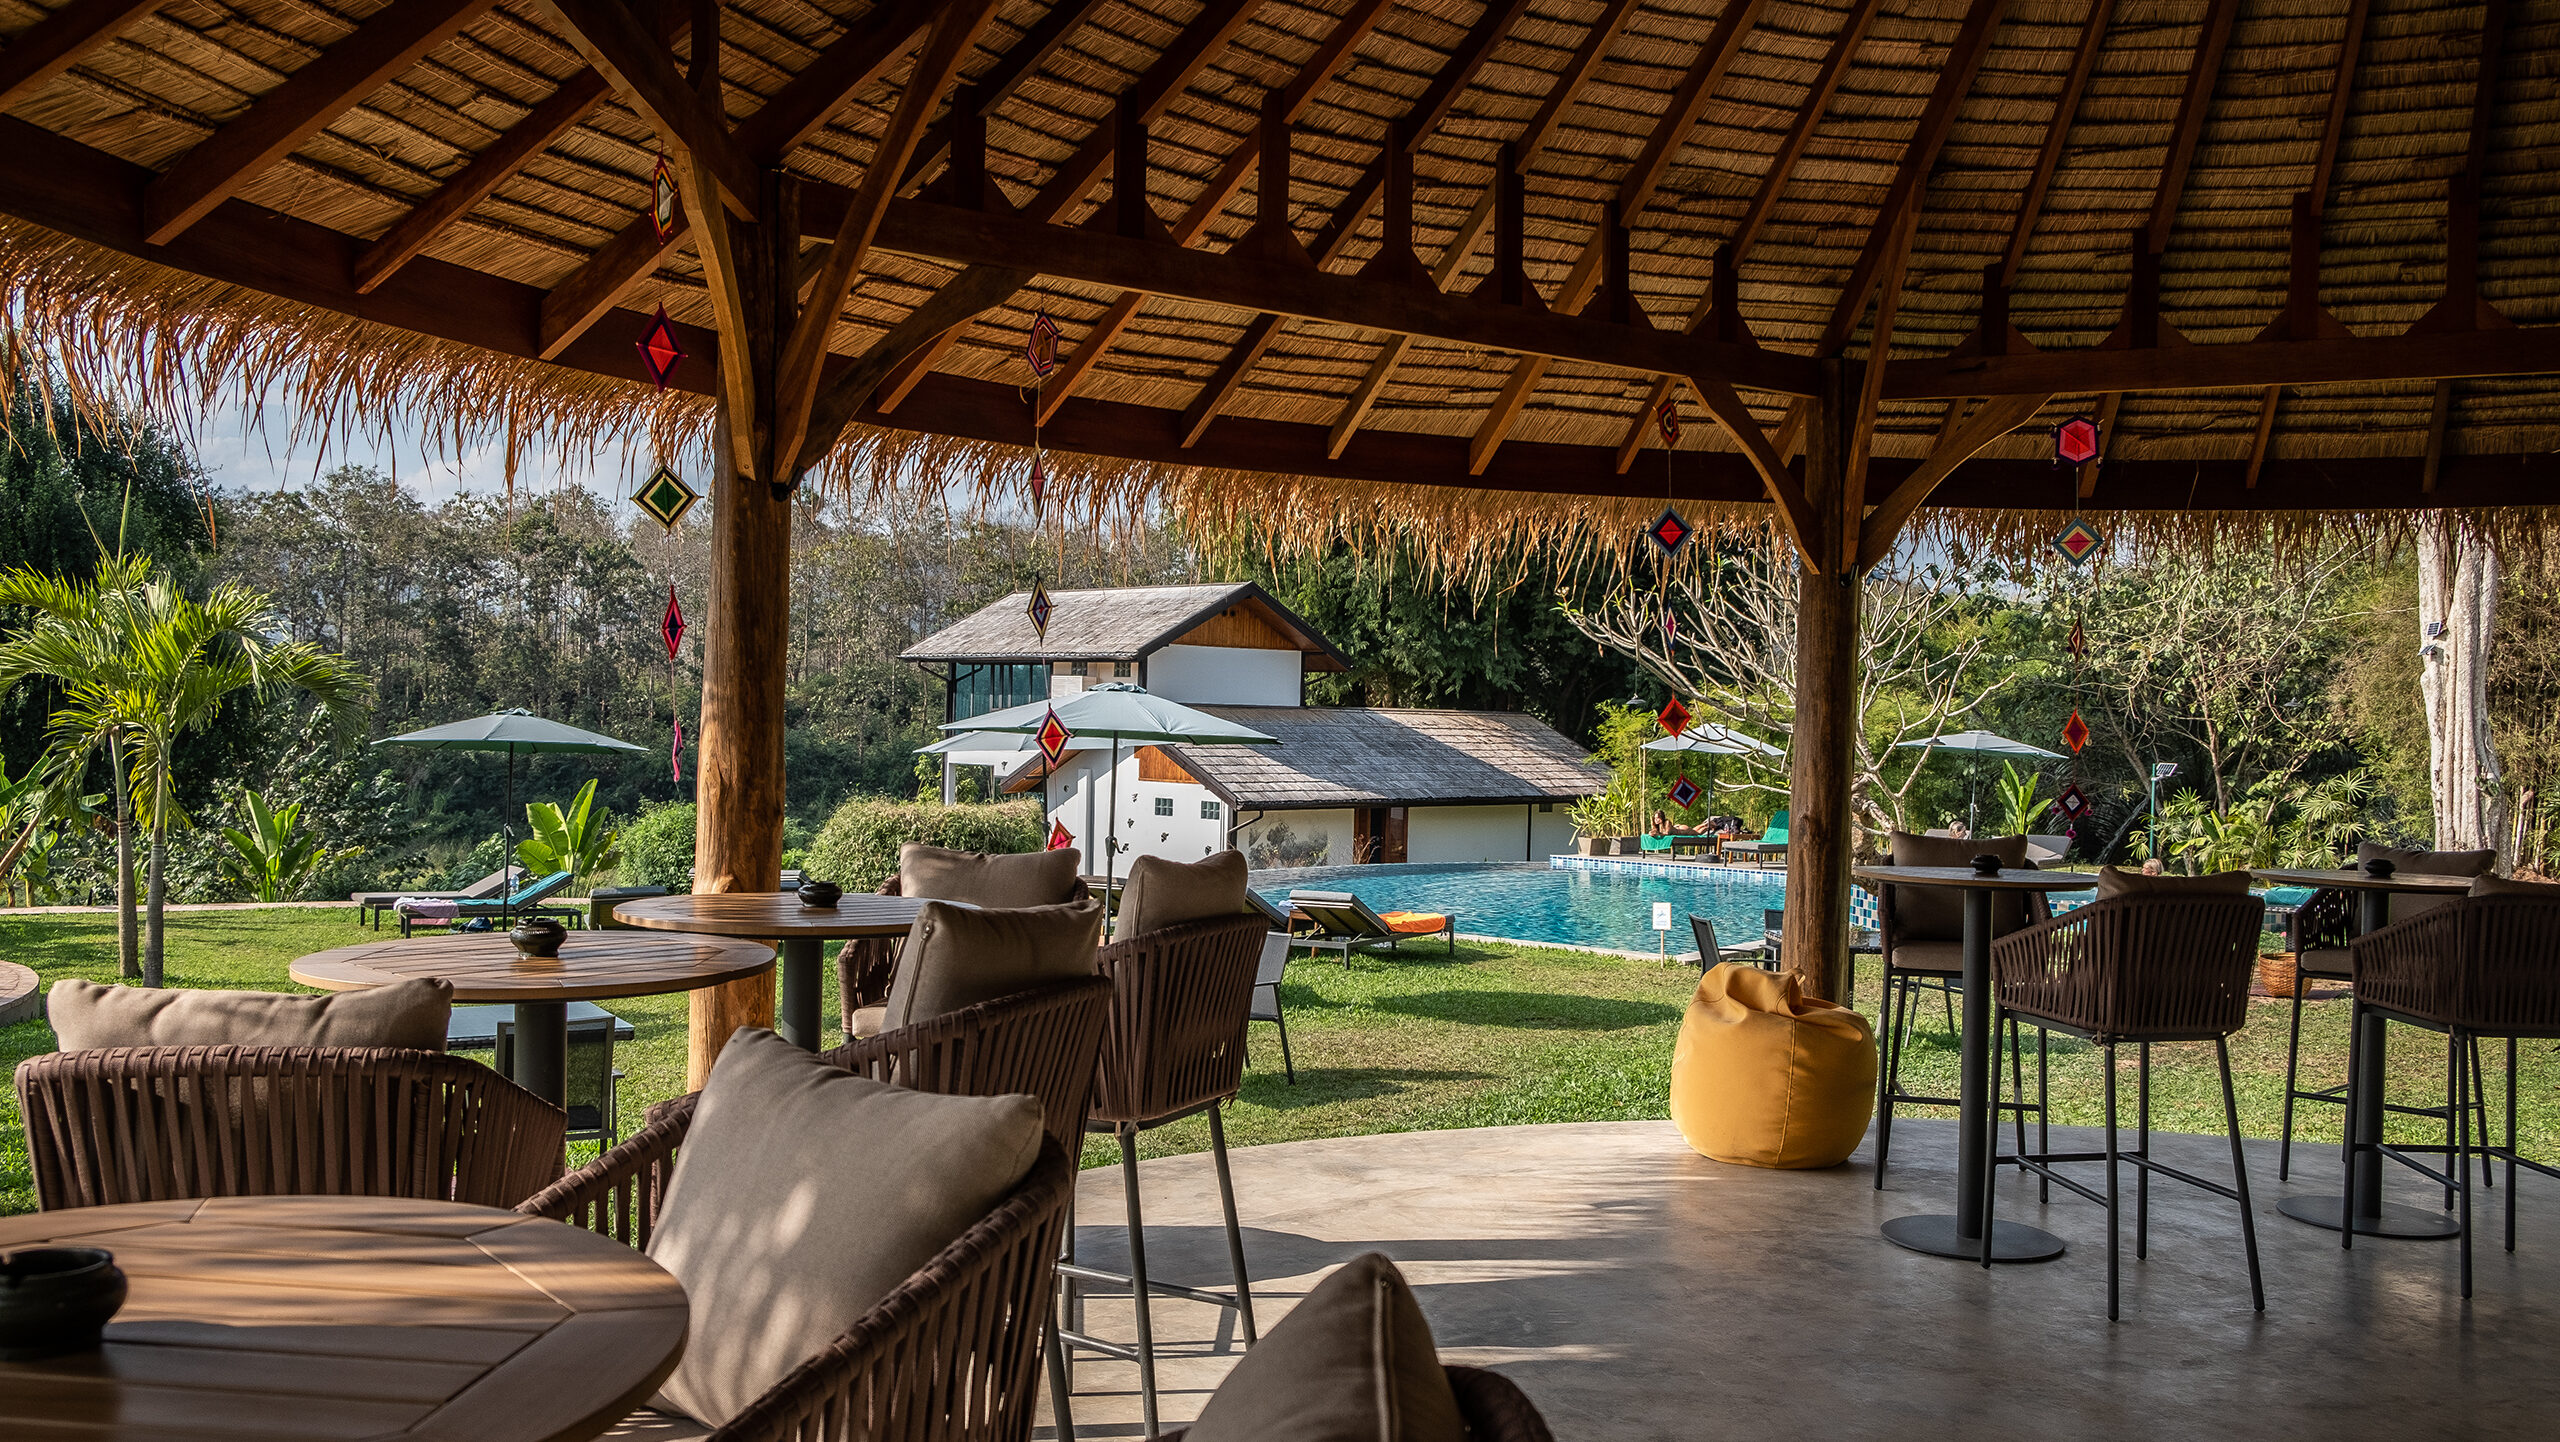 The Namkhan Resort Pool Bar